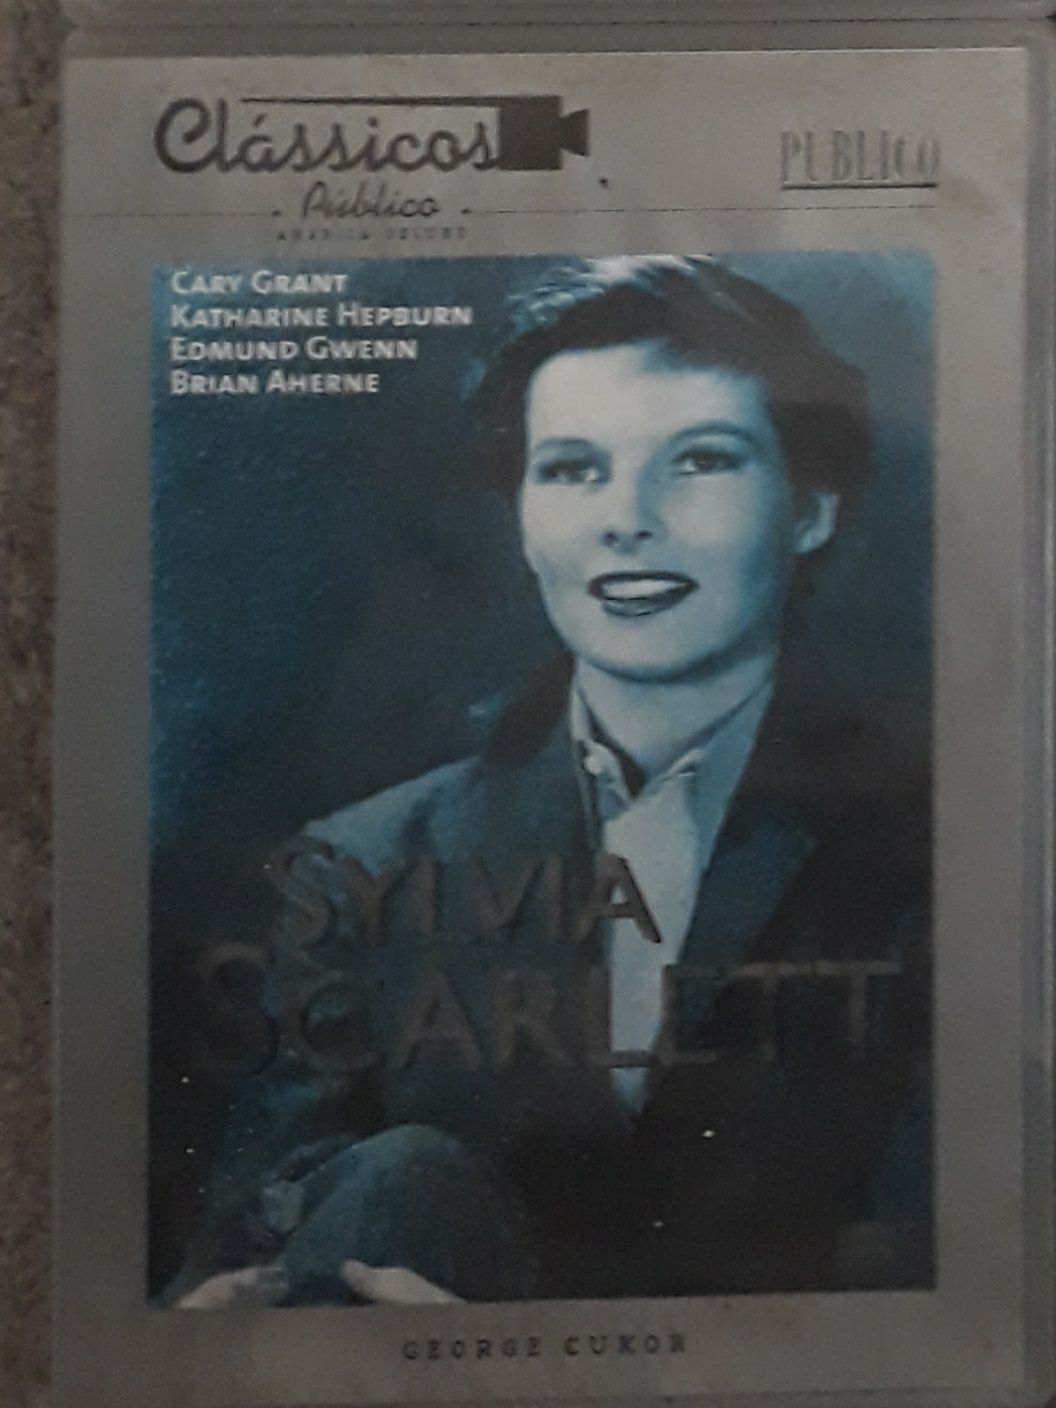 DVD Sylvia Scarlett